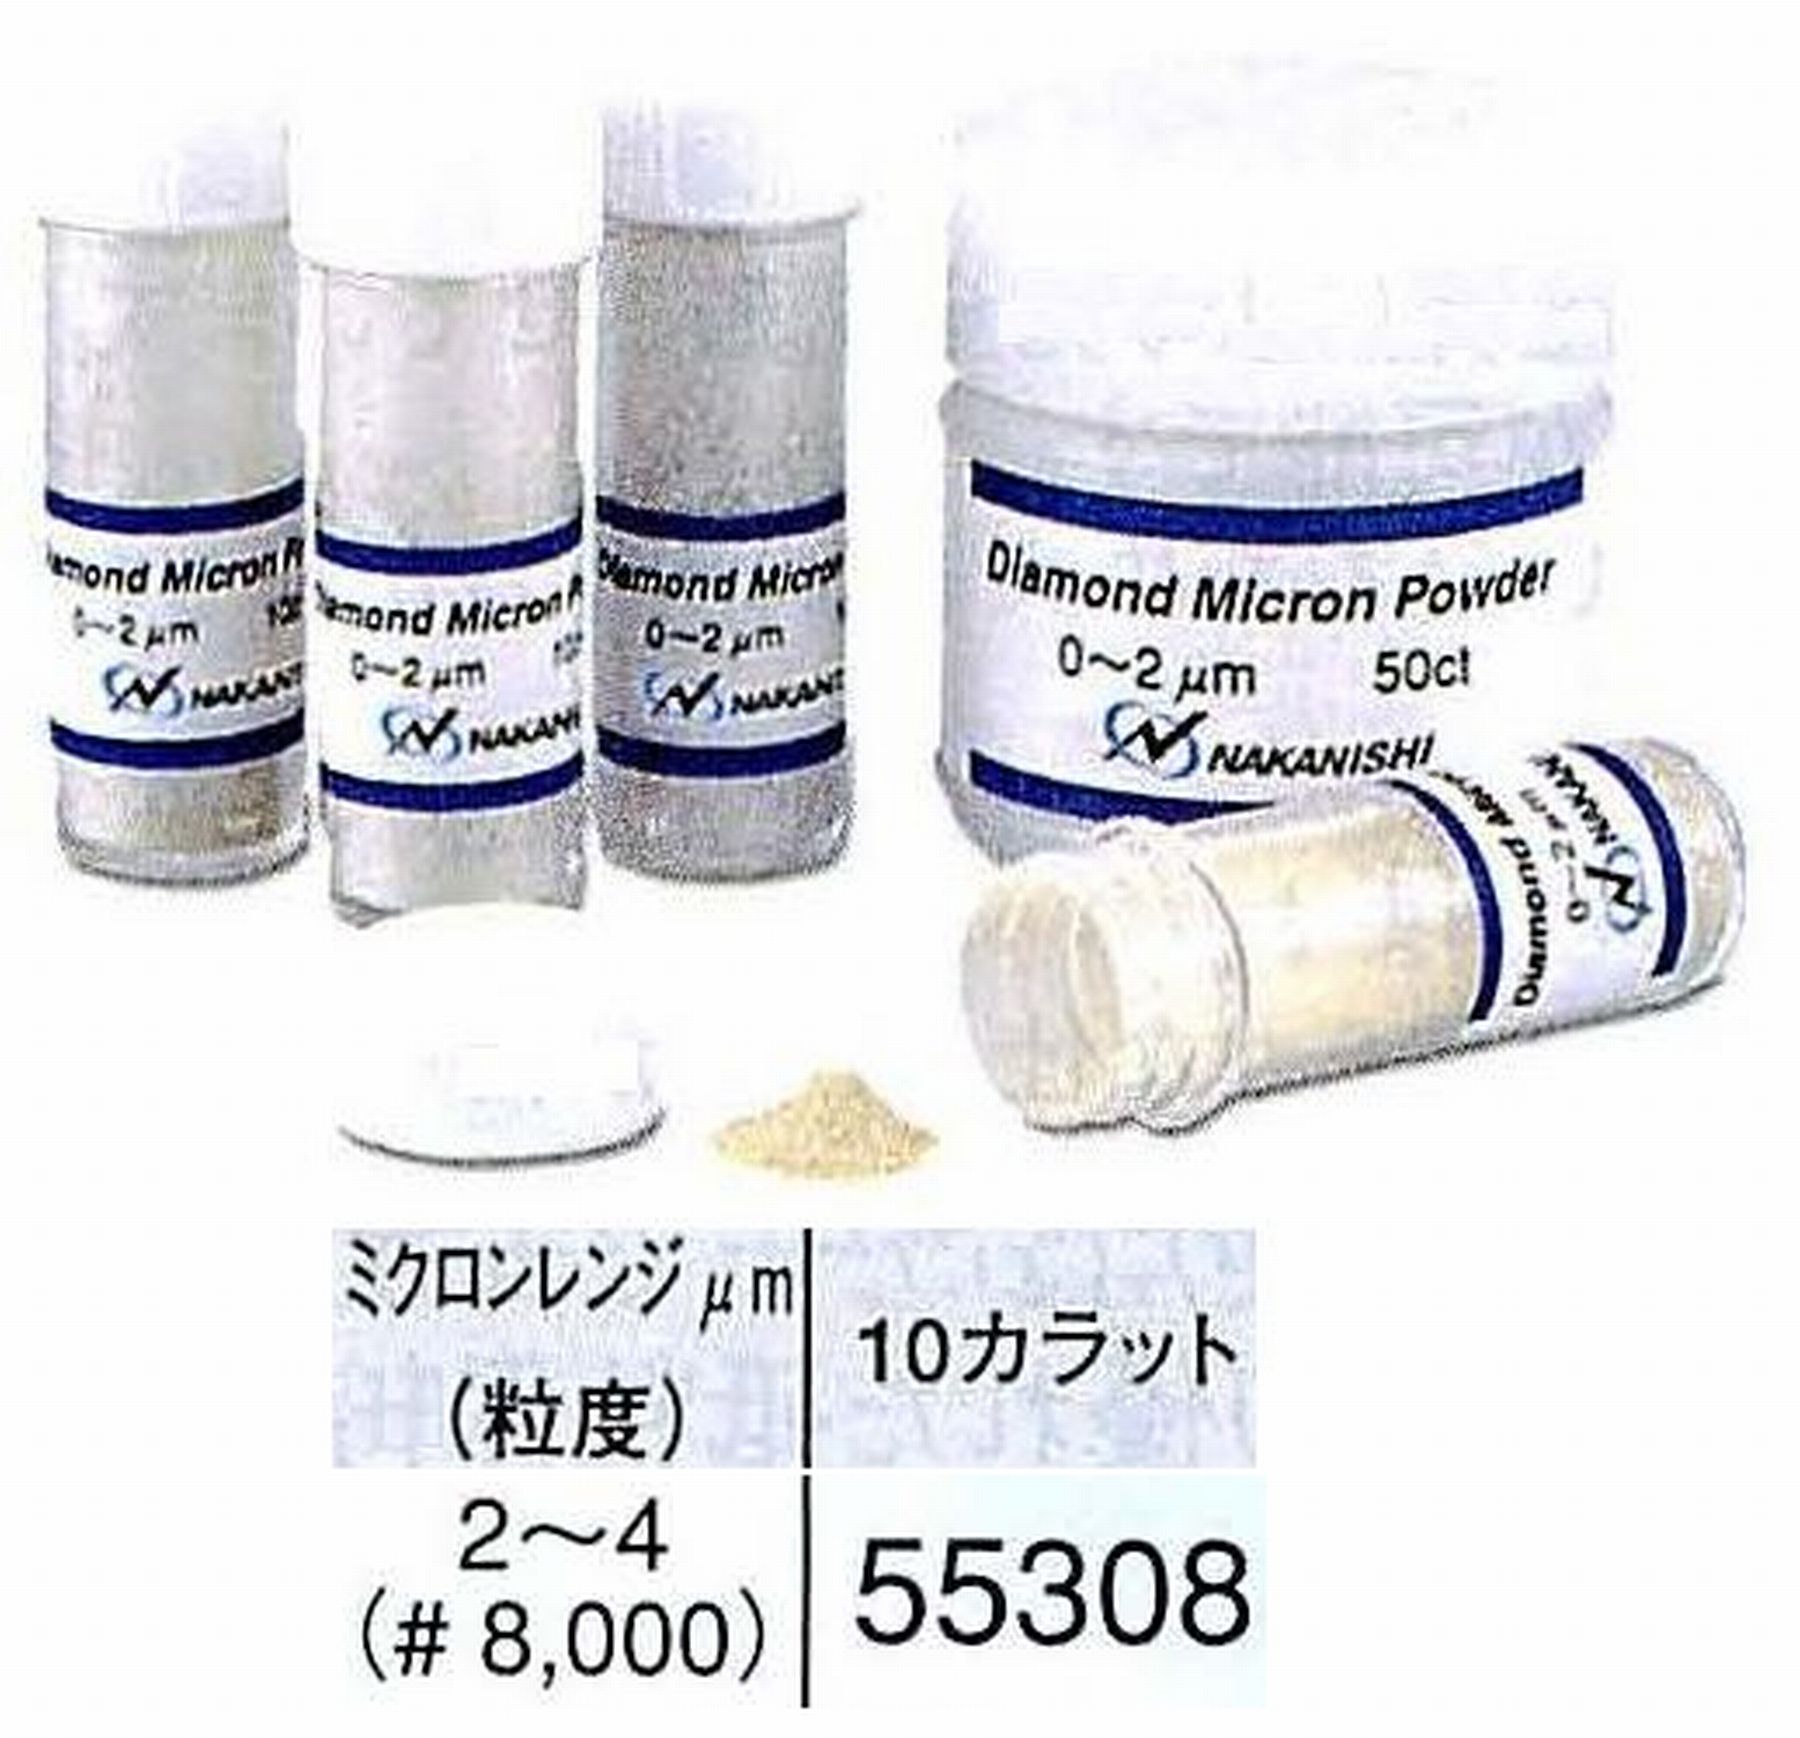 ナカニシ/NAKANISHI ダイヤモンドミクロンパウダー ミクロンレンジ2～4(砥度) 10カラット 55308